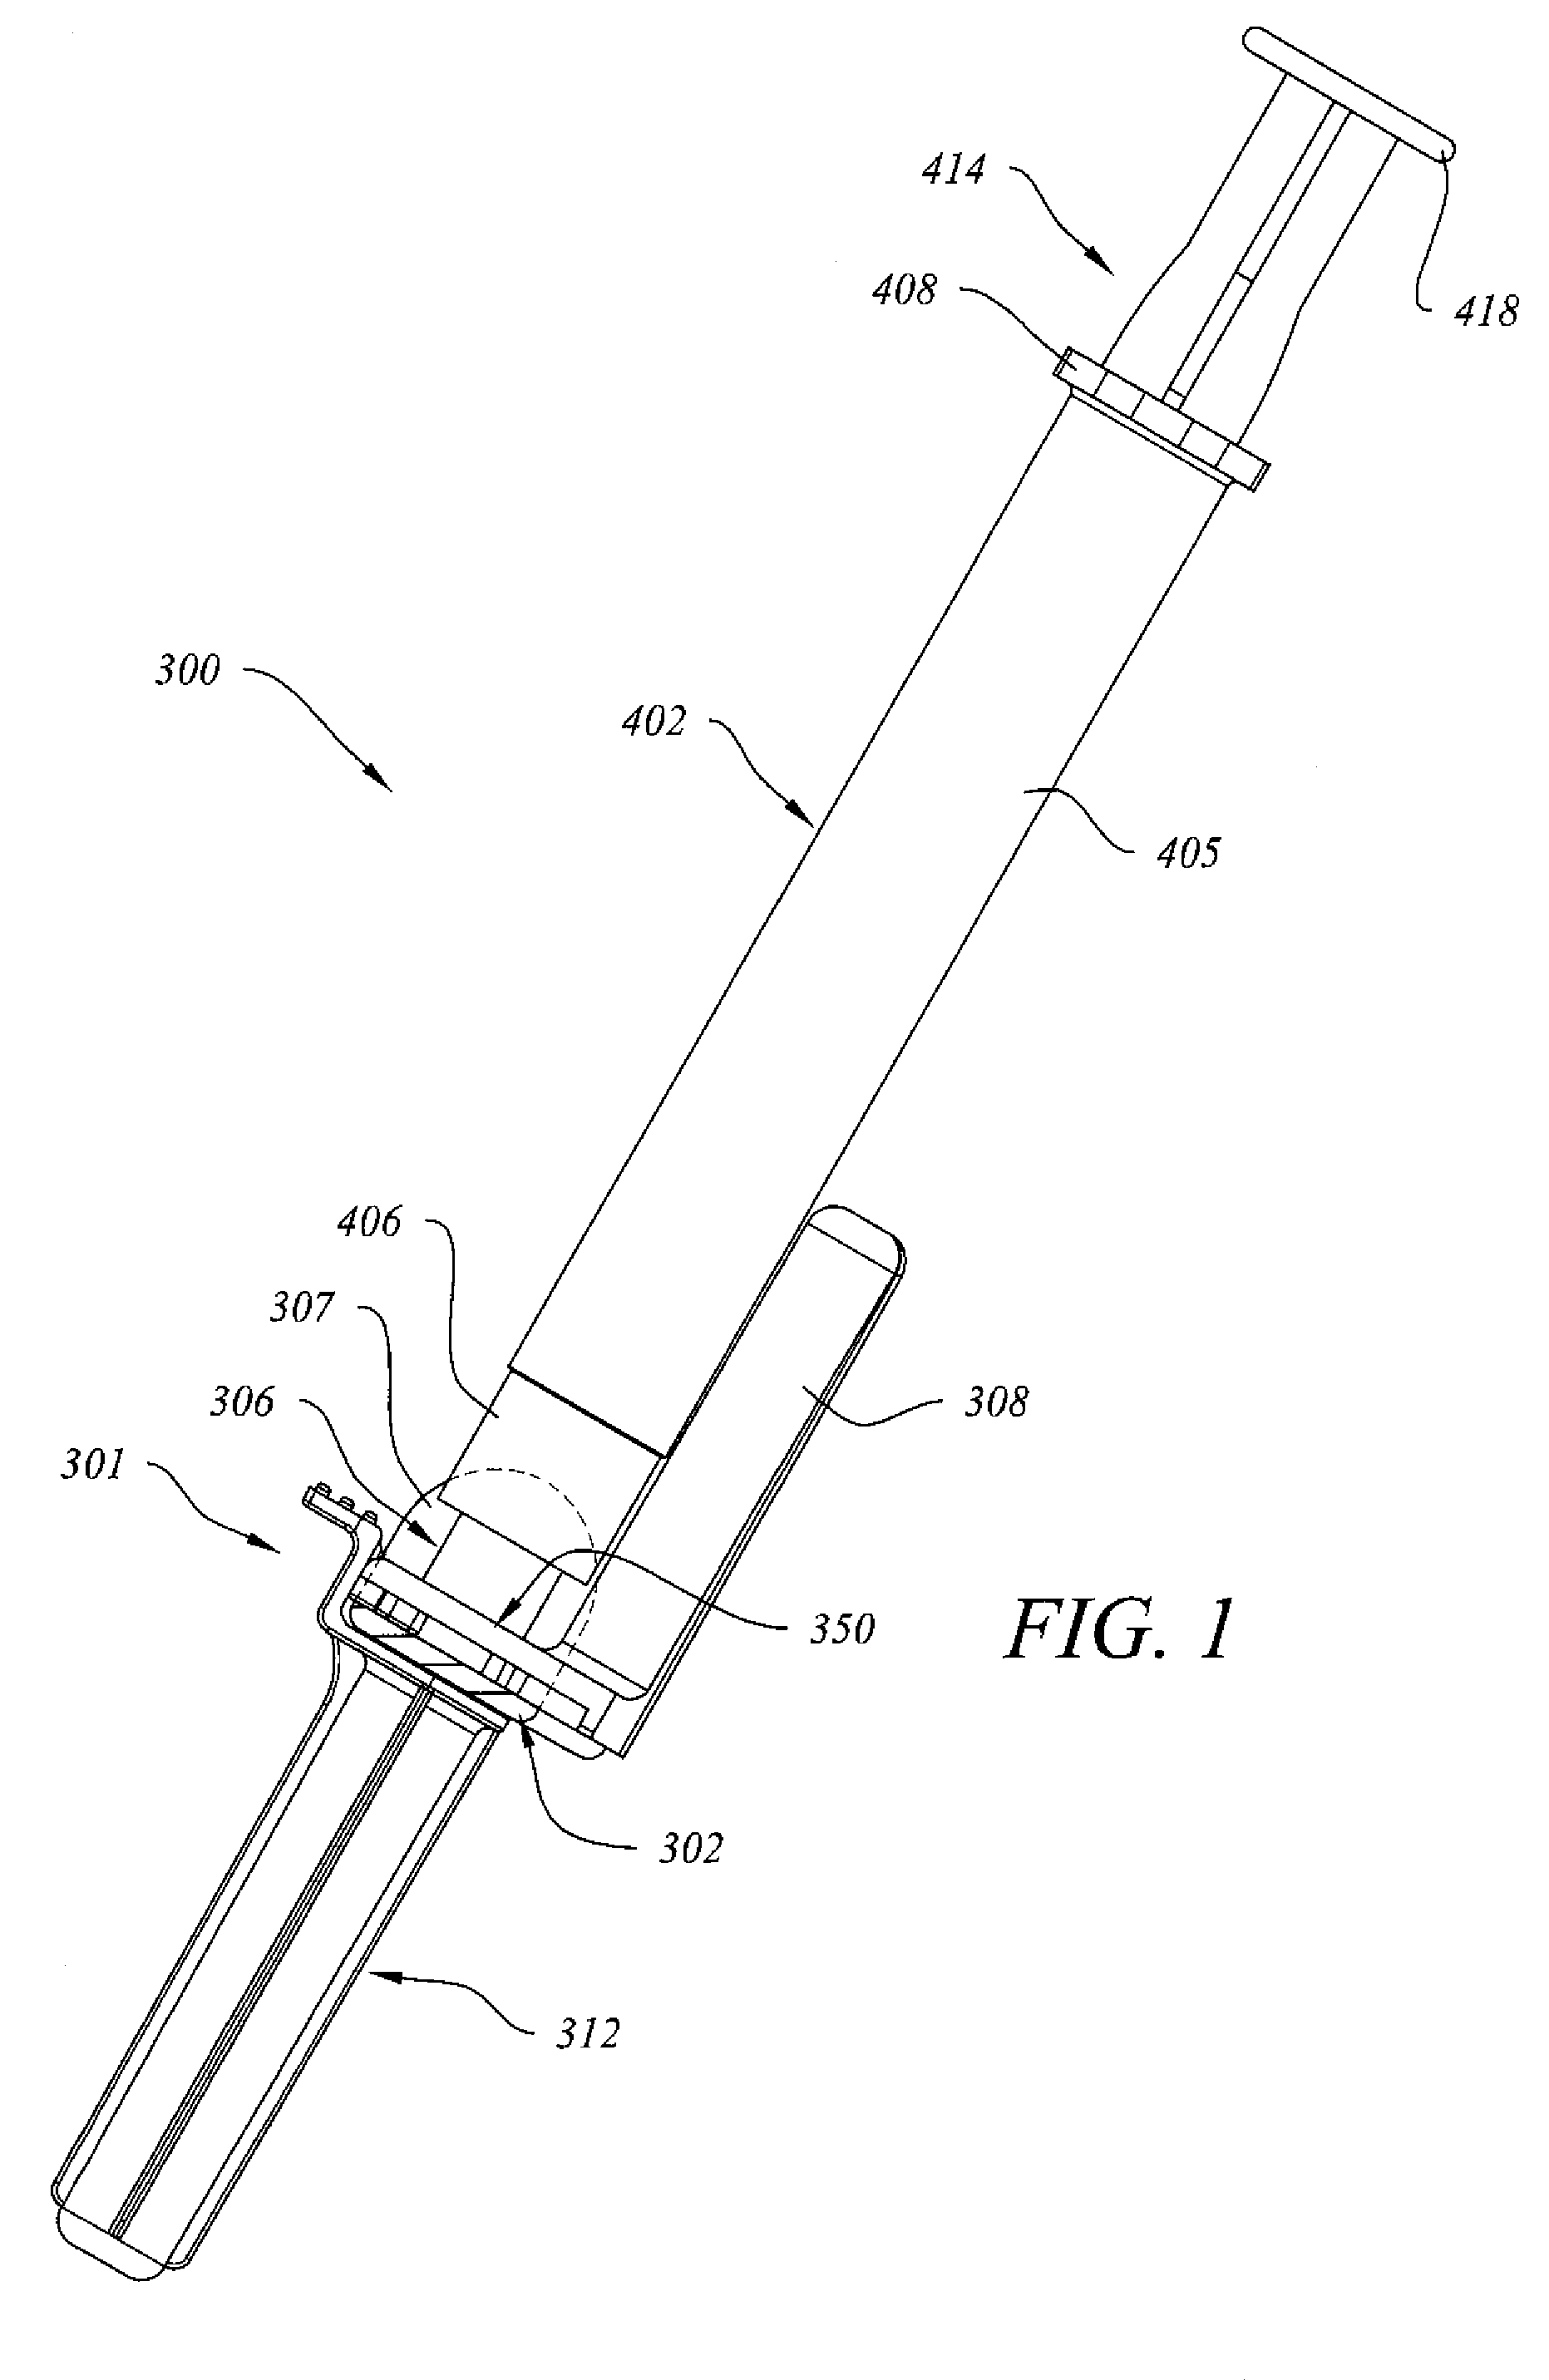 Needle retraction apparatus